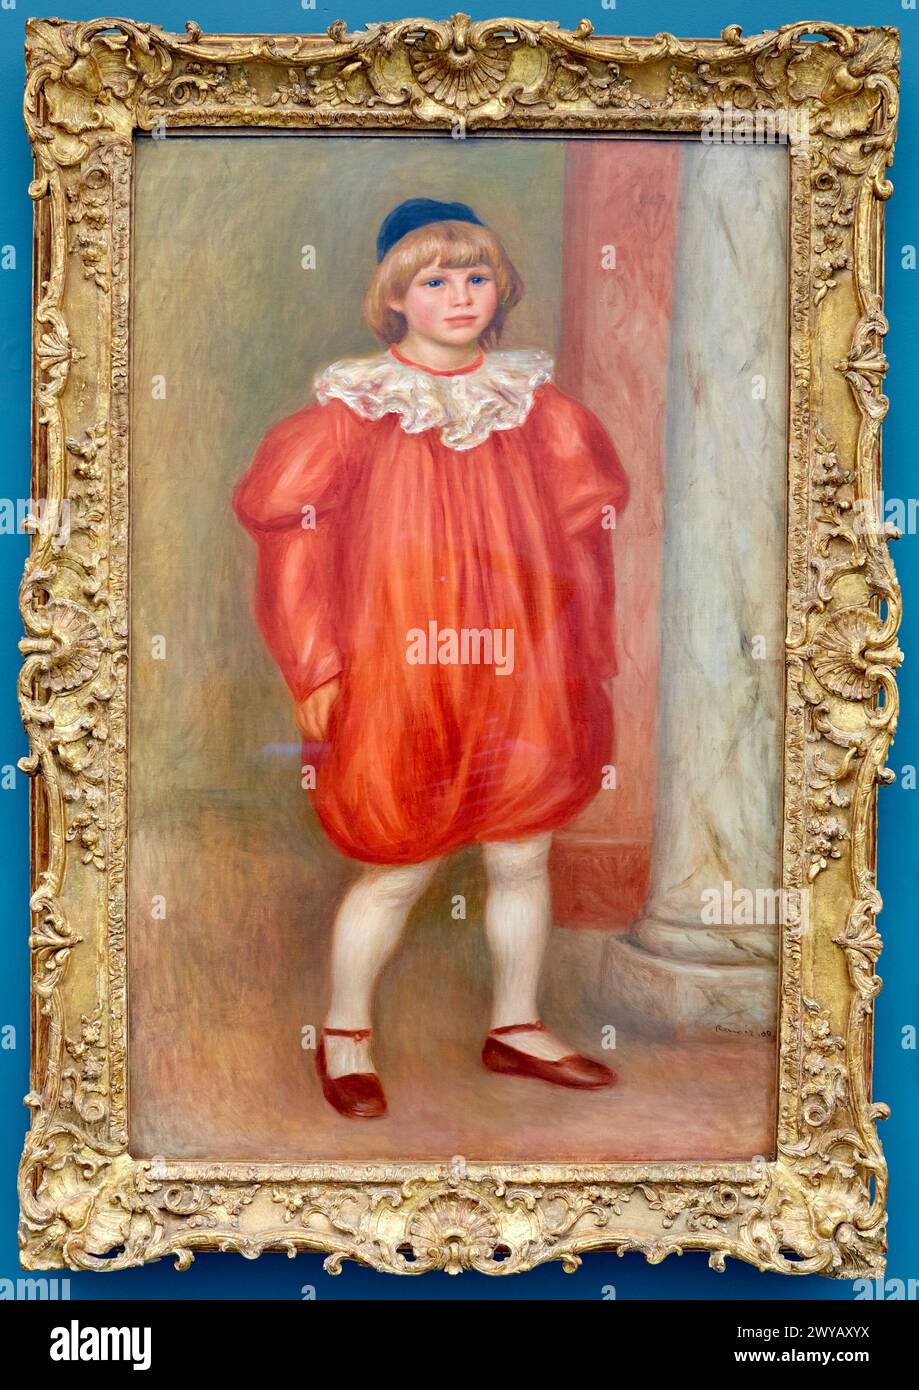 Claude Renoir en clown, Pierre-Auguste Renoir, Musee de L'Orangerie, Tuileries, Paris, France. Stock Photo